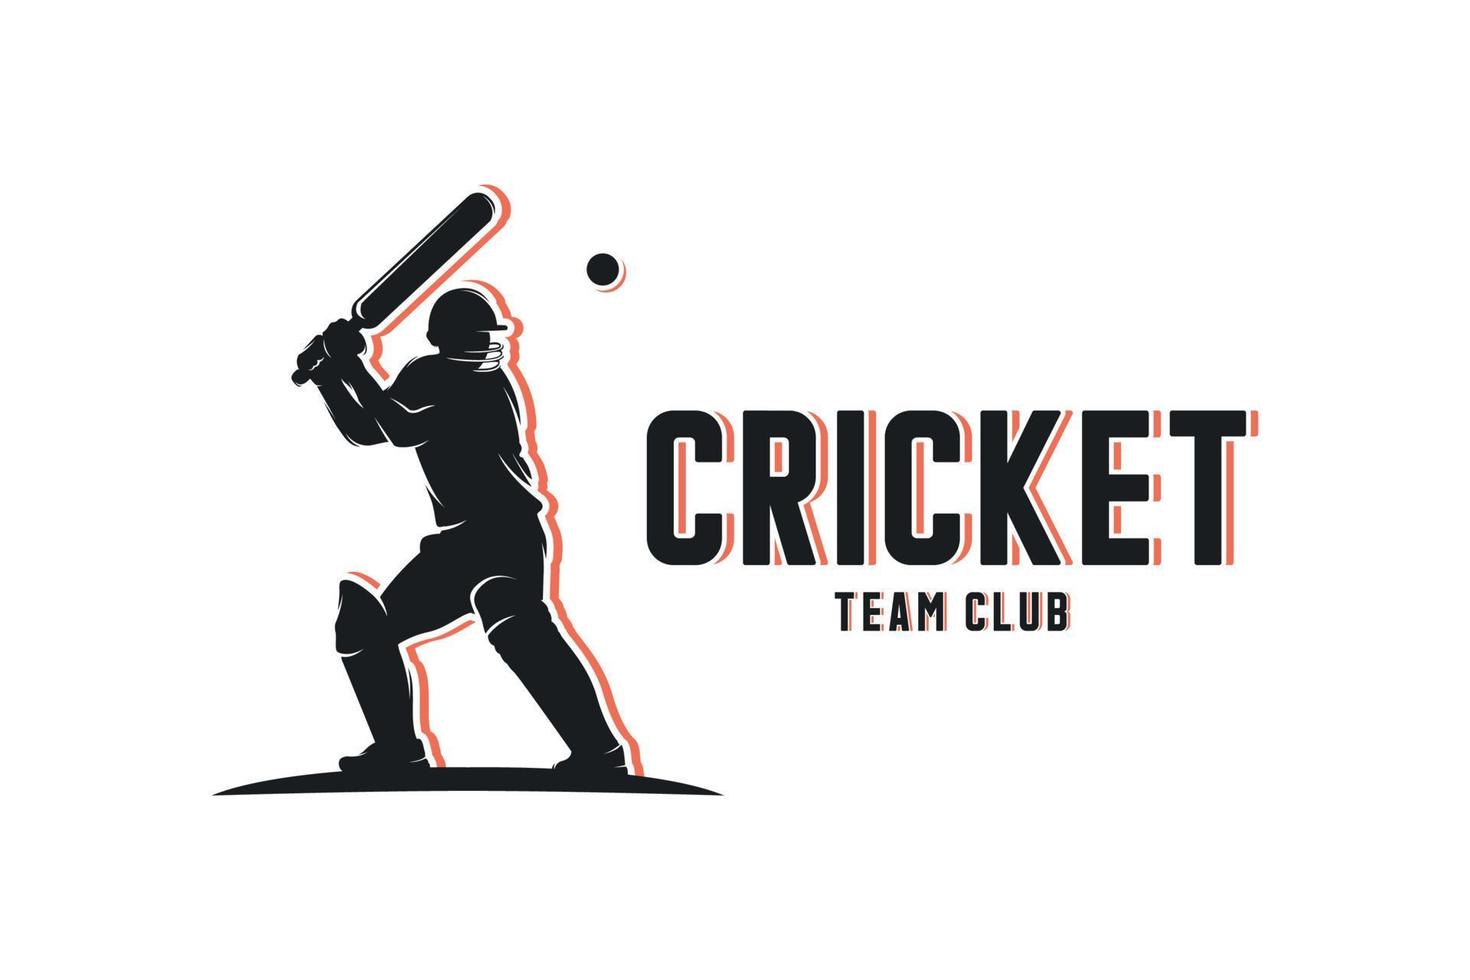 Cricket player silhouette logo design vector